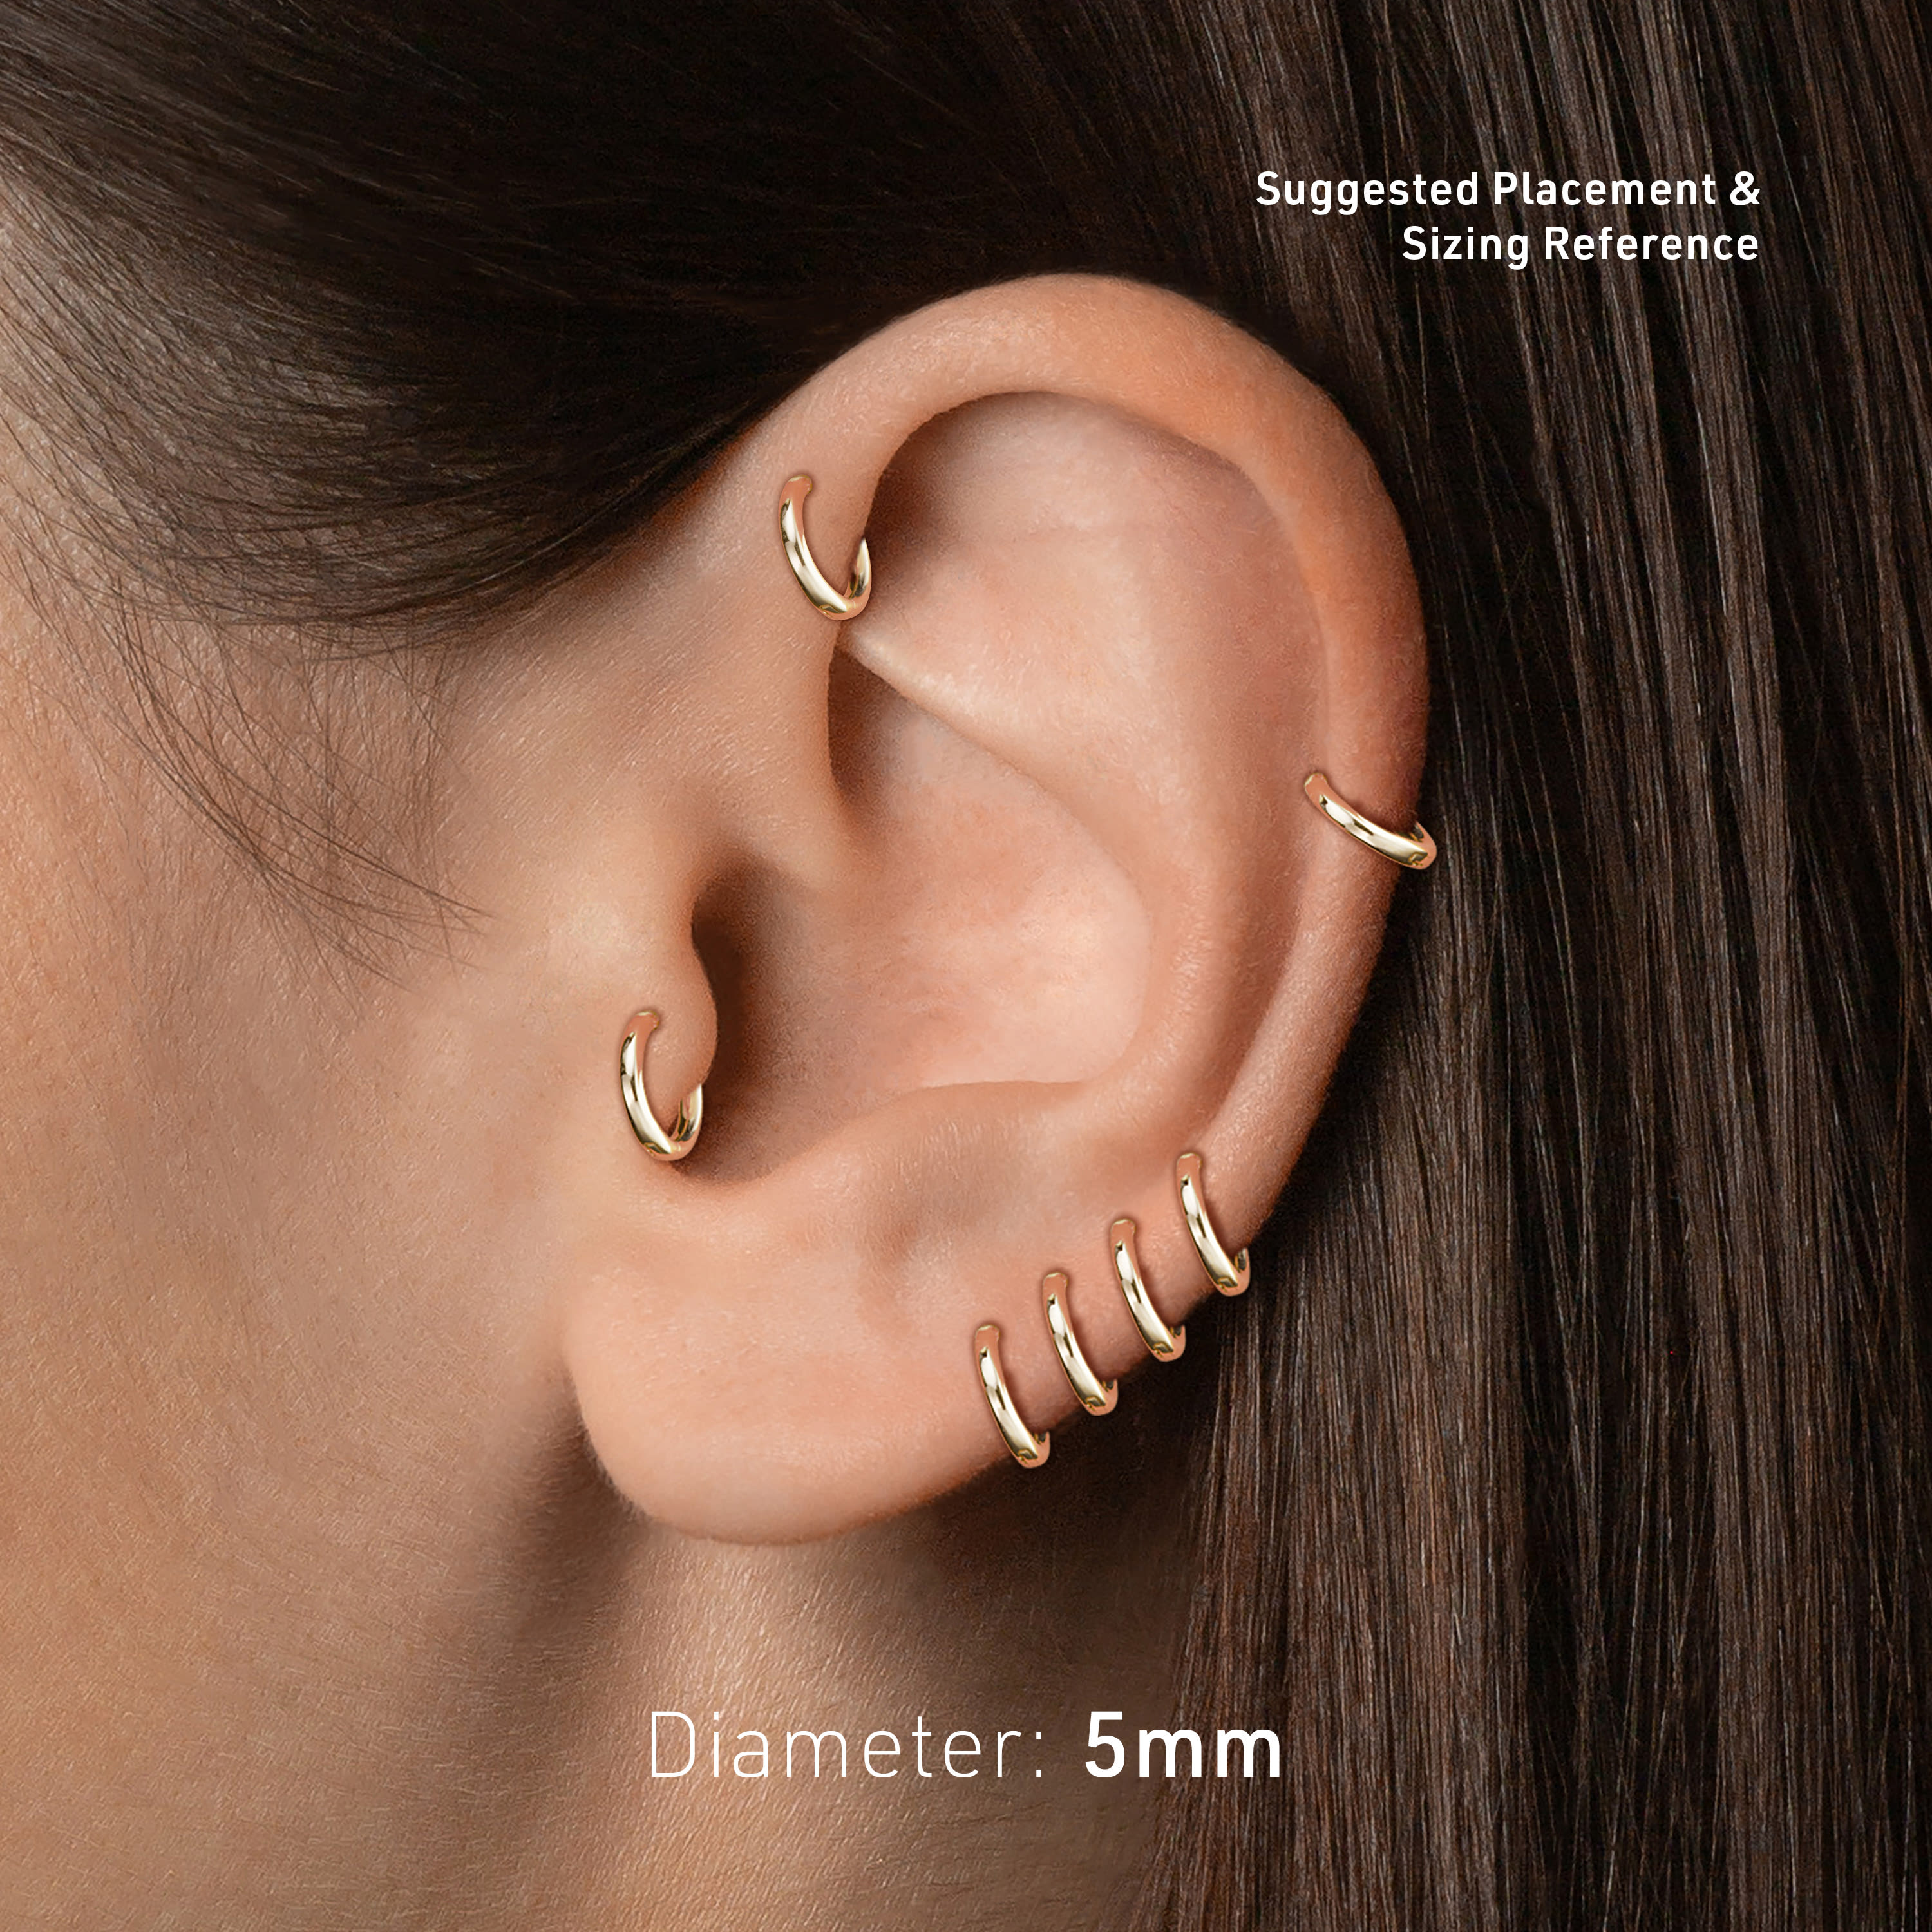 Mens Jewellery Earrings and ear cuffs Maria Tash Triple Long Spike Clicker 8mm 14-karat Gold Earring in Metallic for Men 